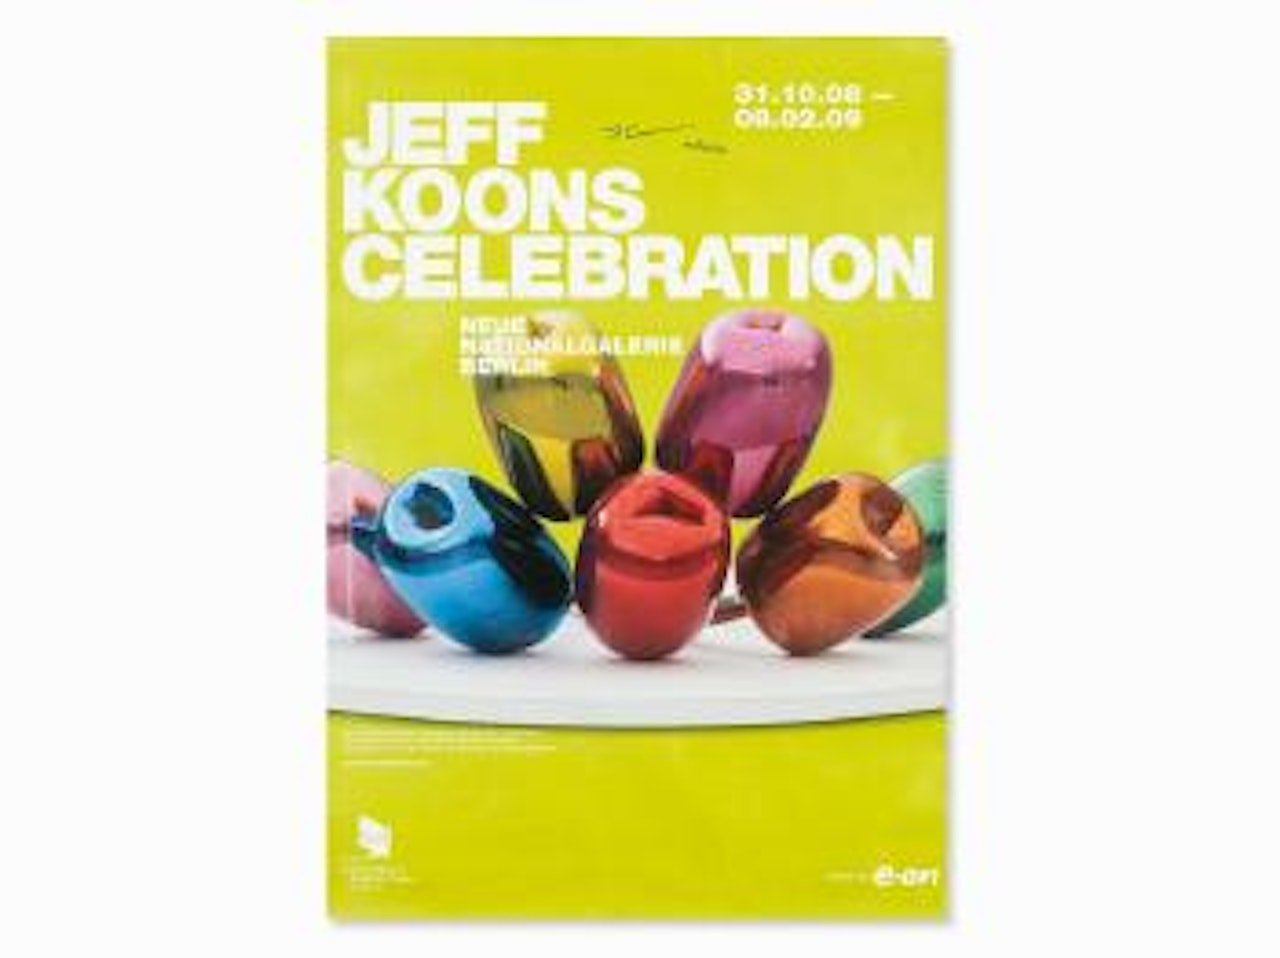 Jeff Koons Celebration by Jeff Koons